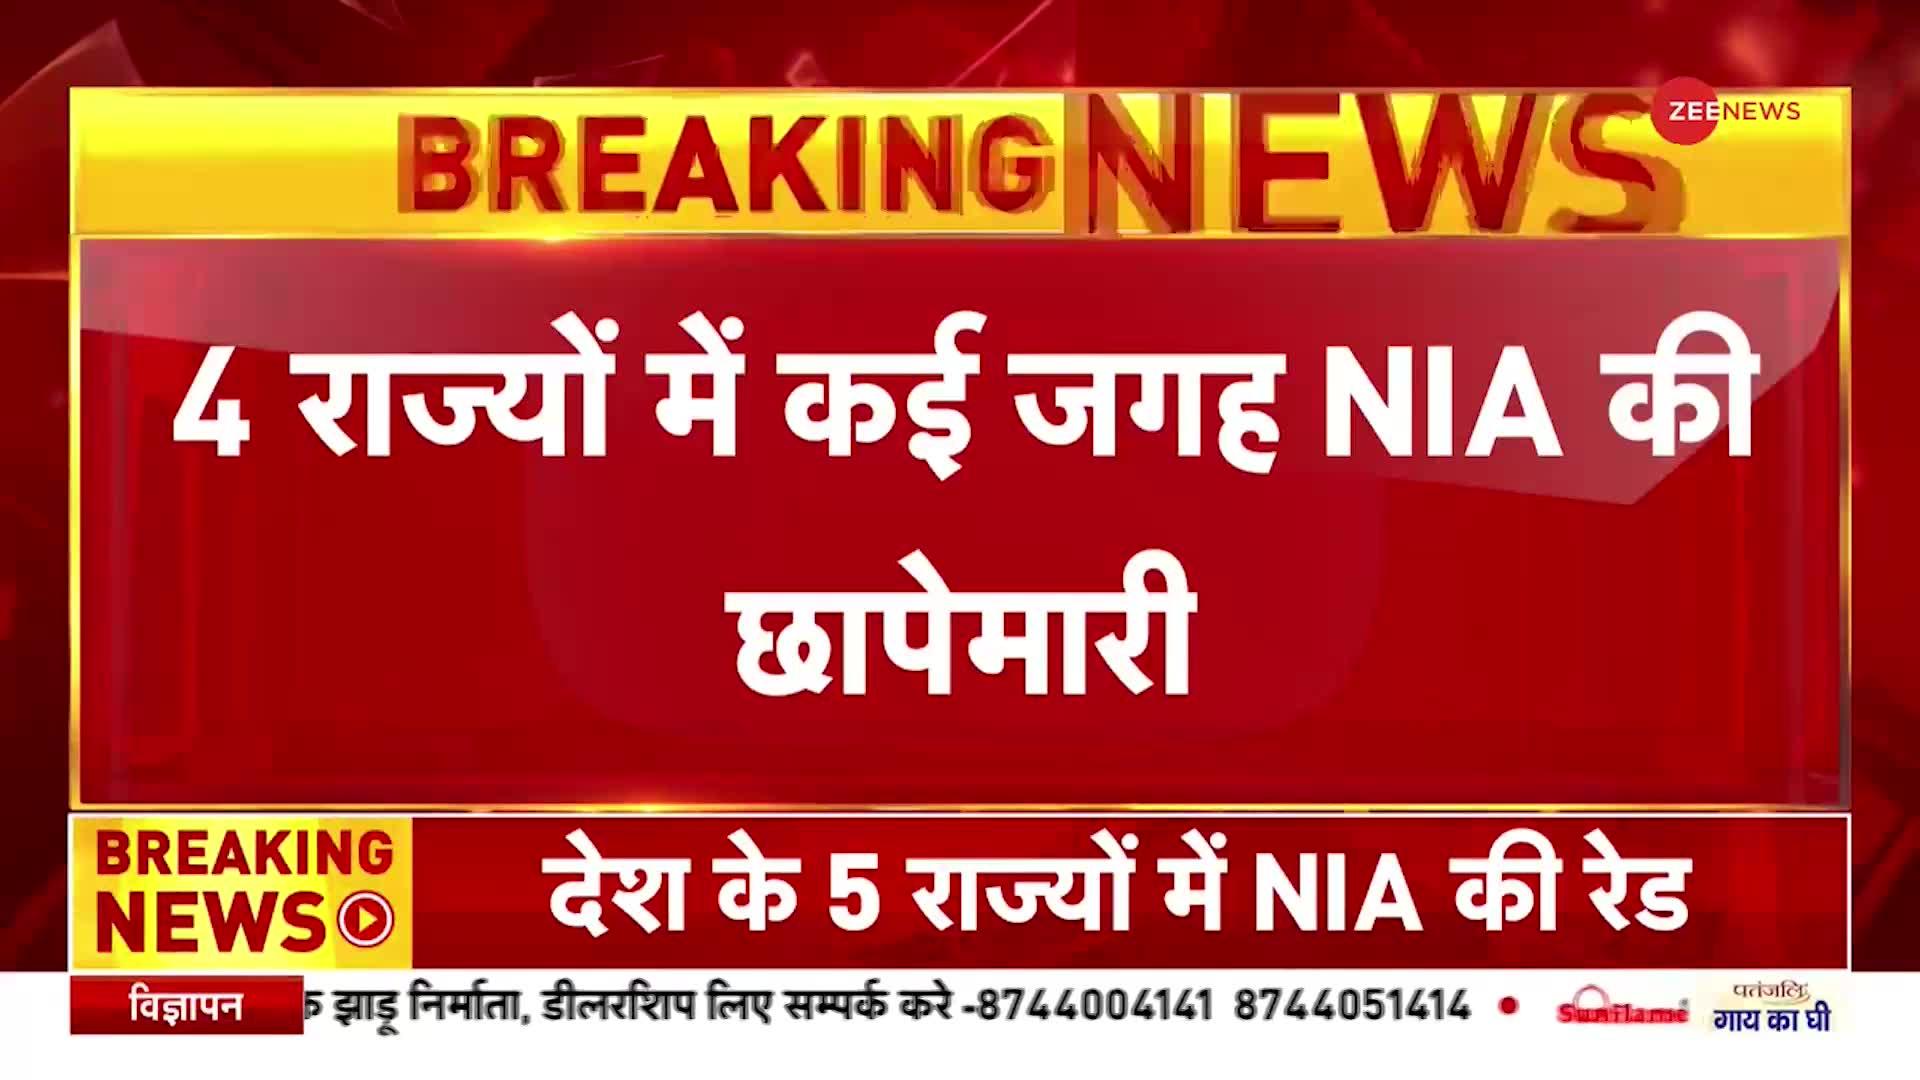 NIA-Raid: गैंगस्टर्स पर कड़ी कार्रवाई,  दिल्ली, पंजाब समेत 5 राज्यों  पर NIA के छापे